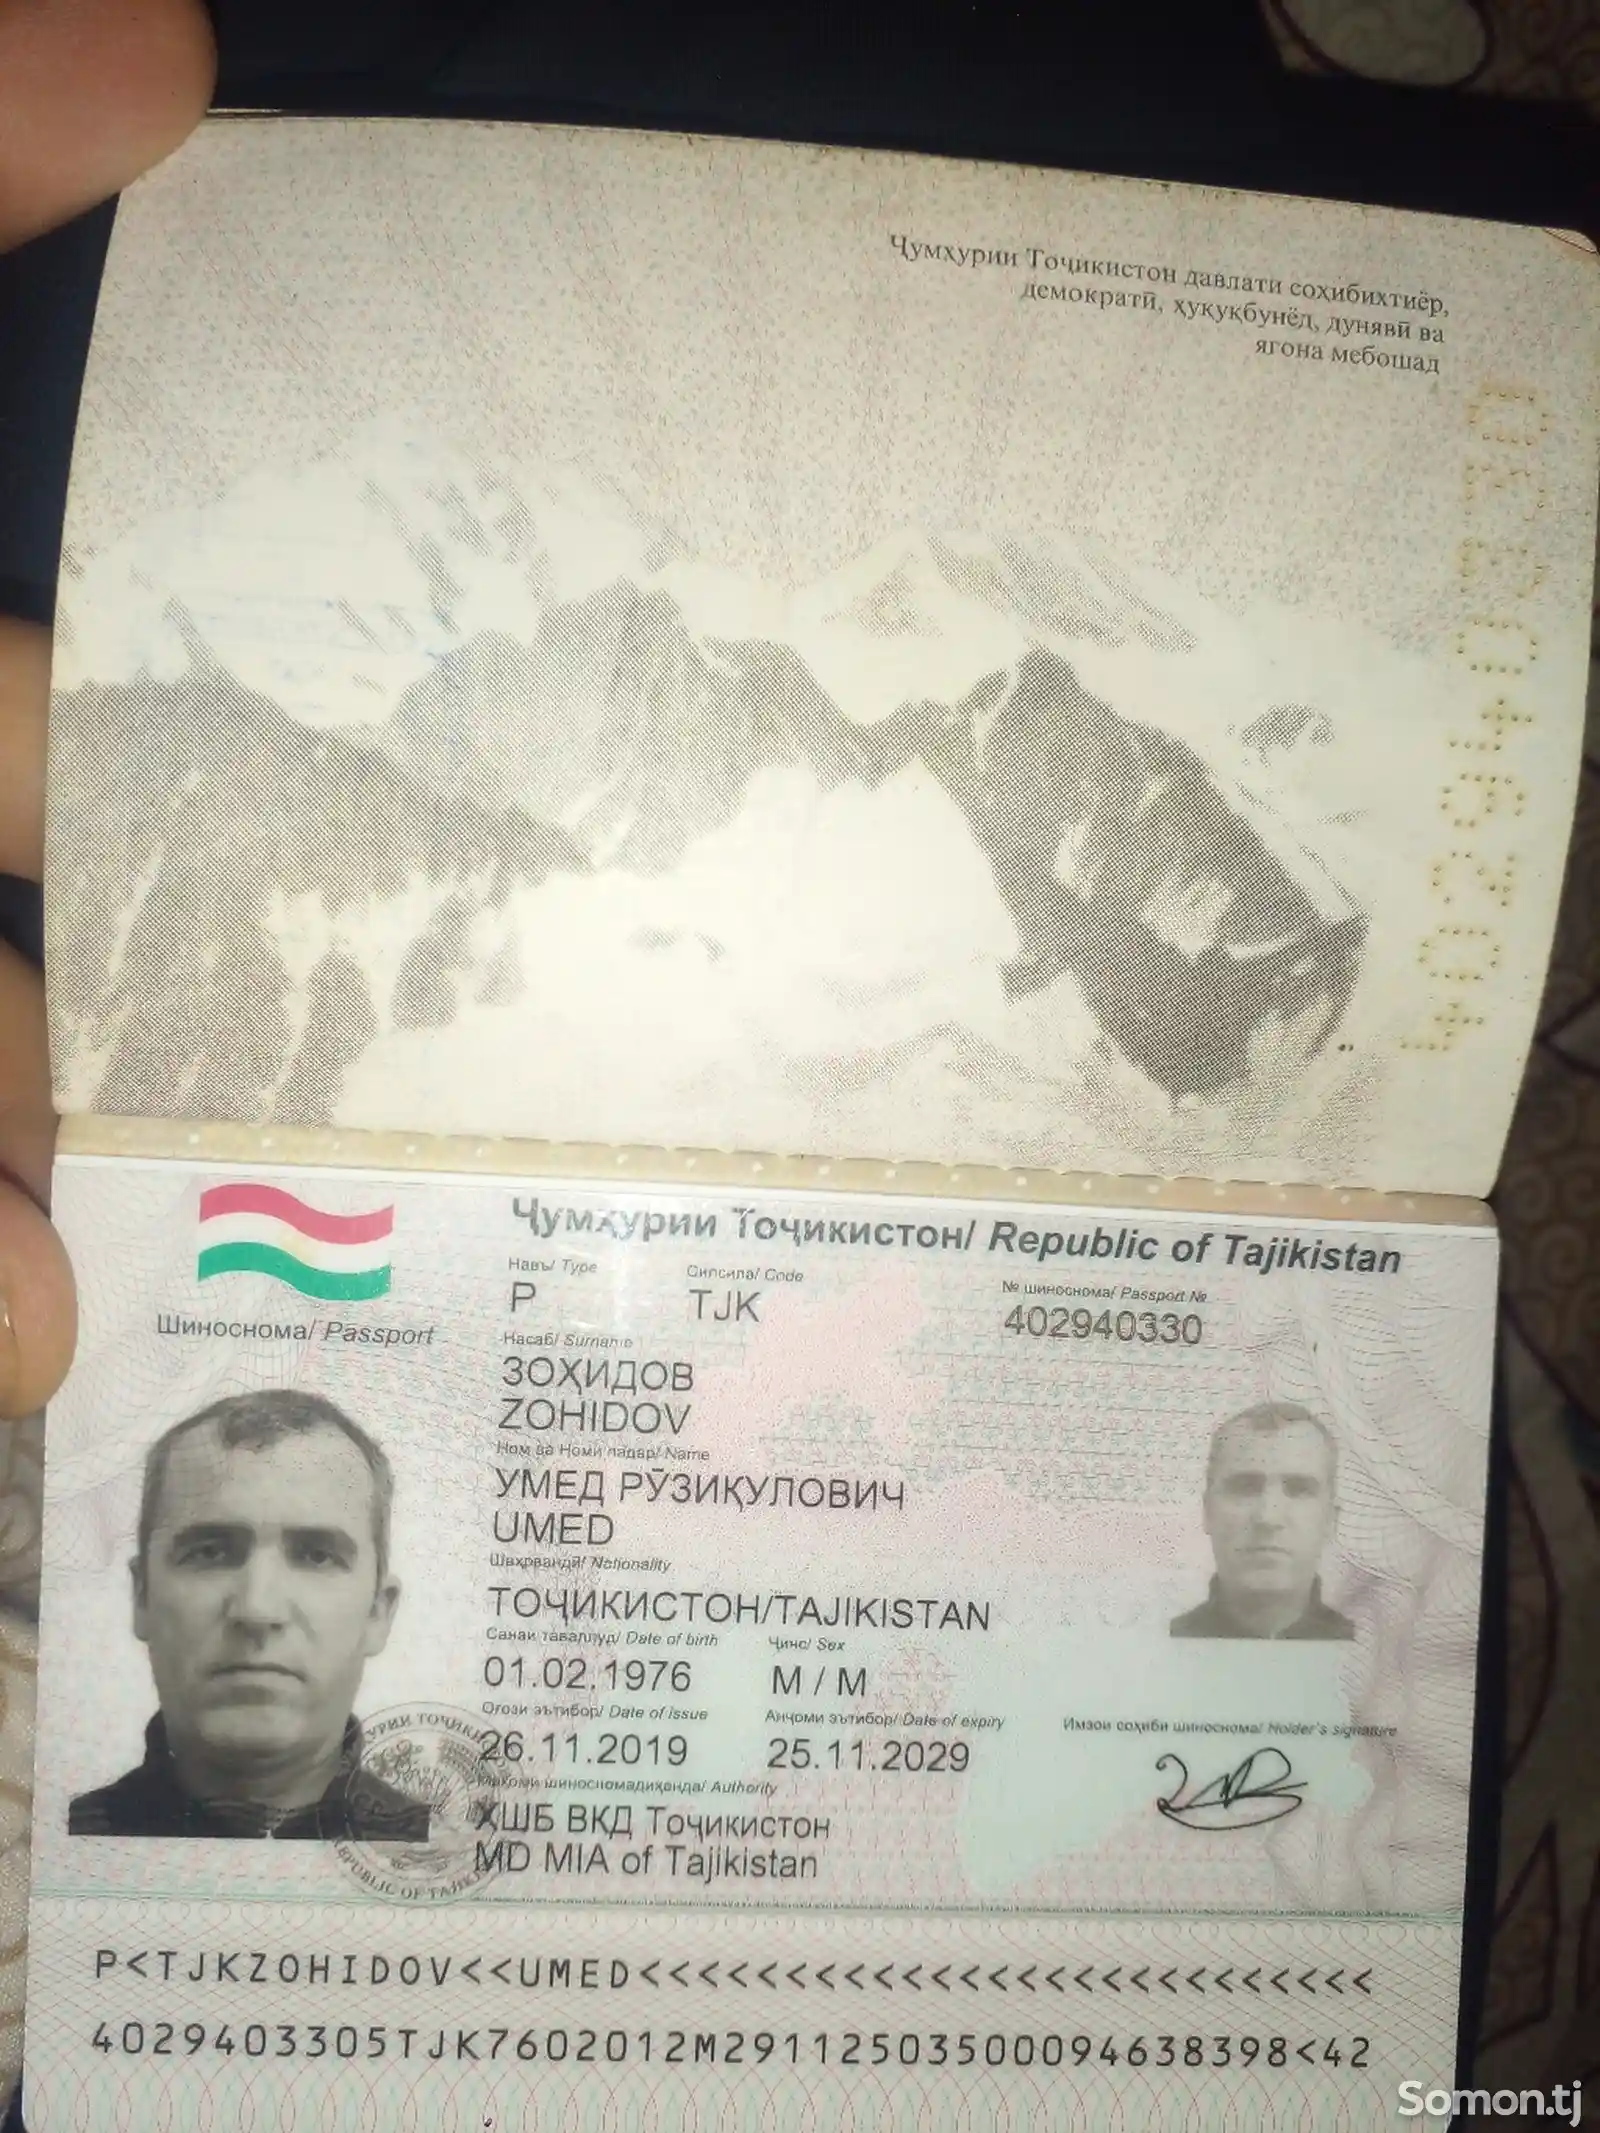 Найден паспорт на имя Хамидова Абдурасула Халиловича-2